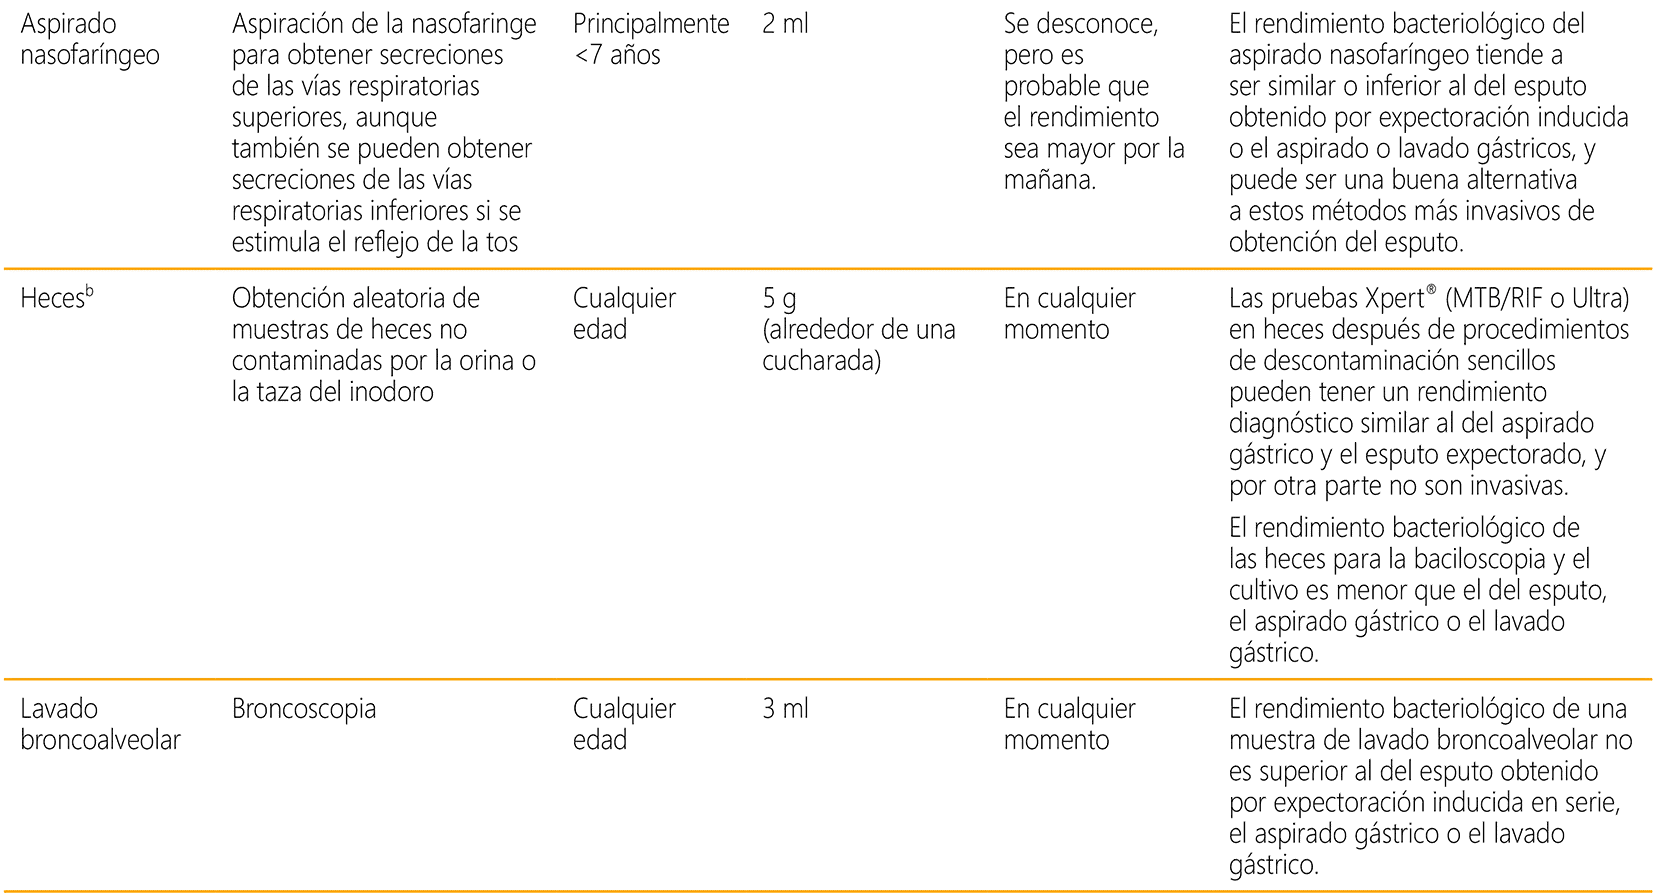 Table A3.1. Respiratory specimens